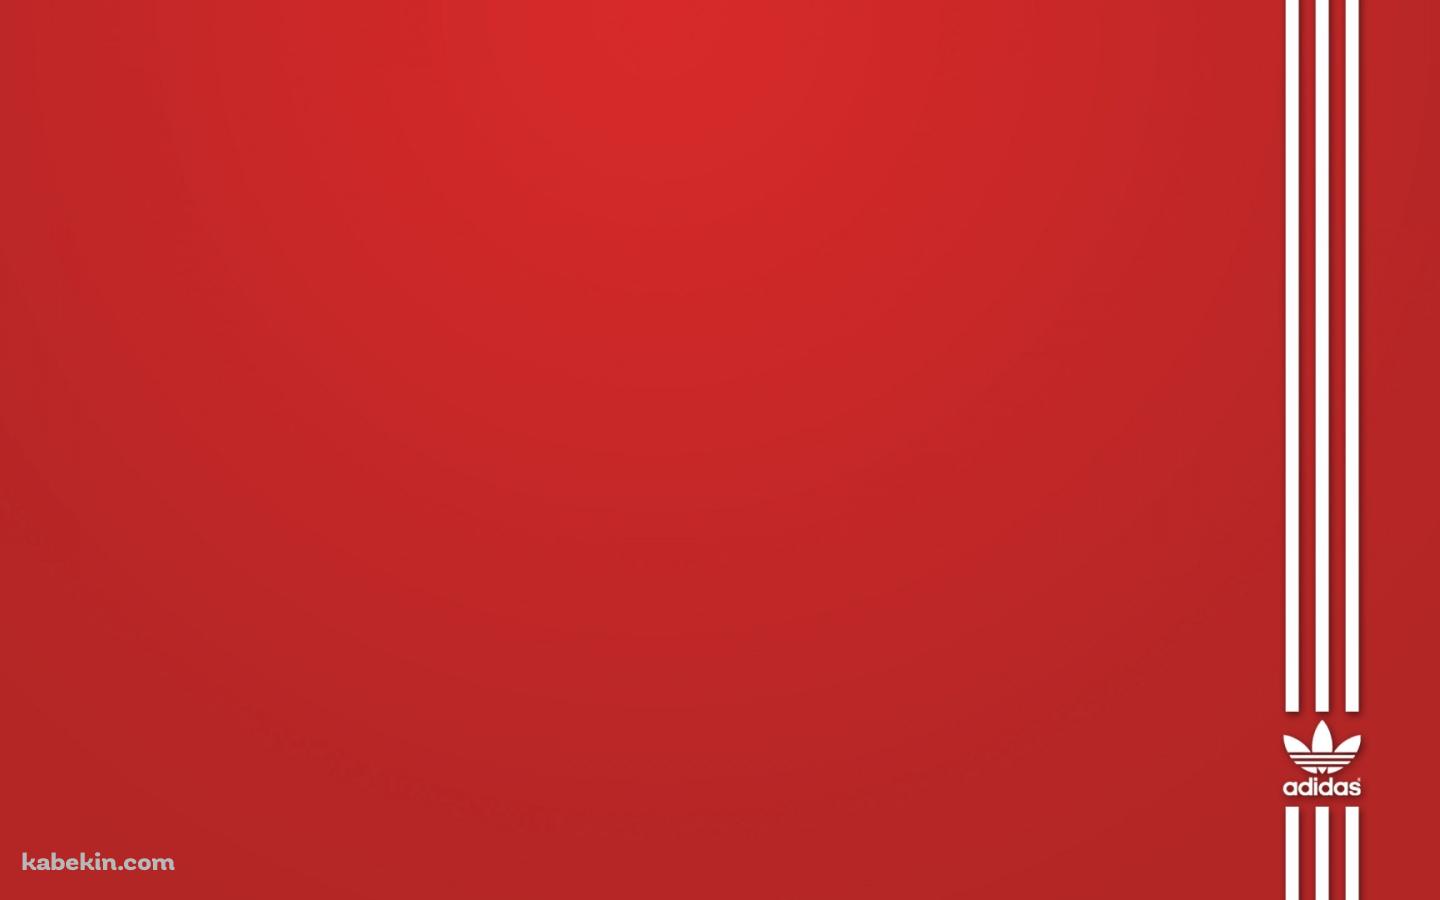 赤いアディダス ロゴの壁紙(1440px x 900px) 高画質 PC・デスクトップ用